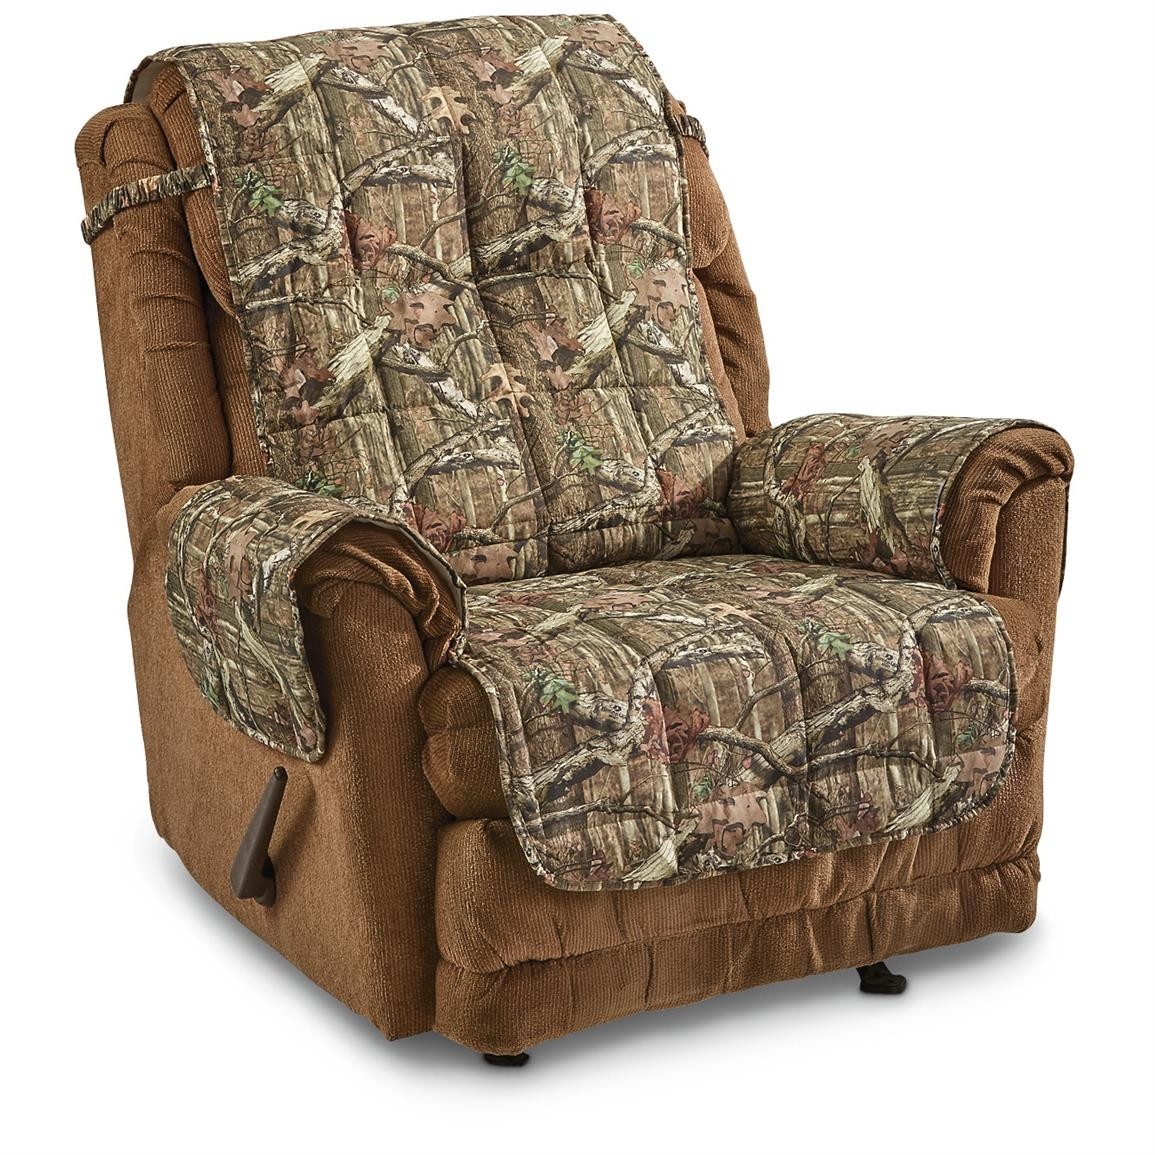 Mossy oak camo furniture covers 647980 furniture covers